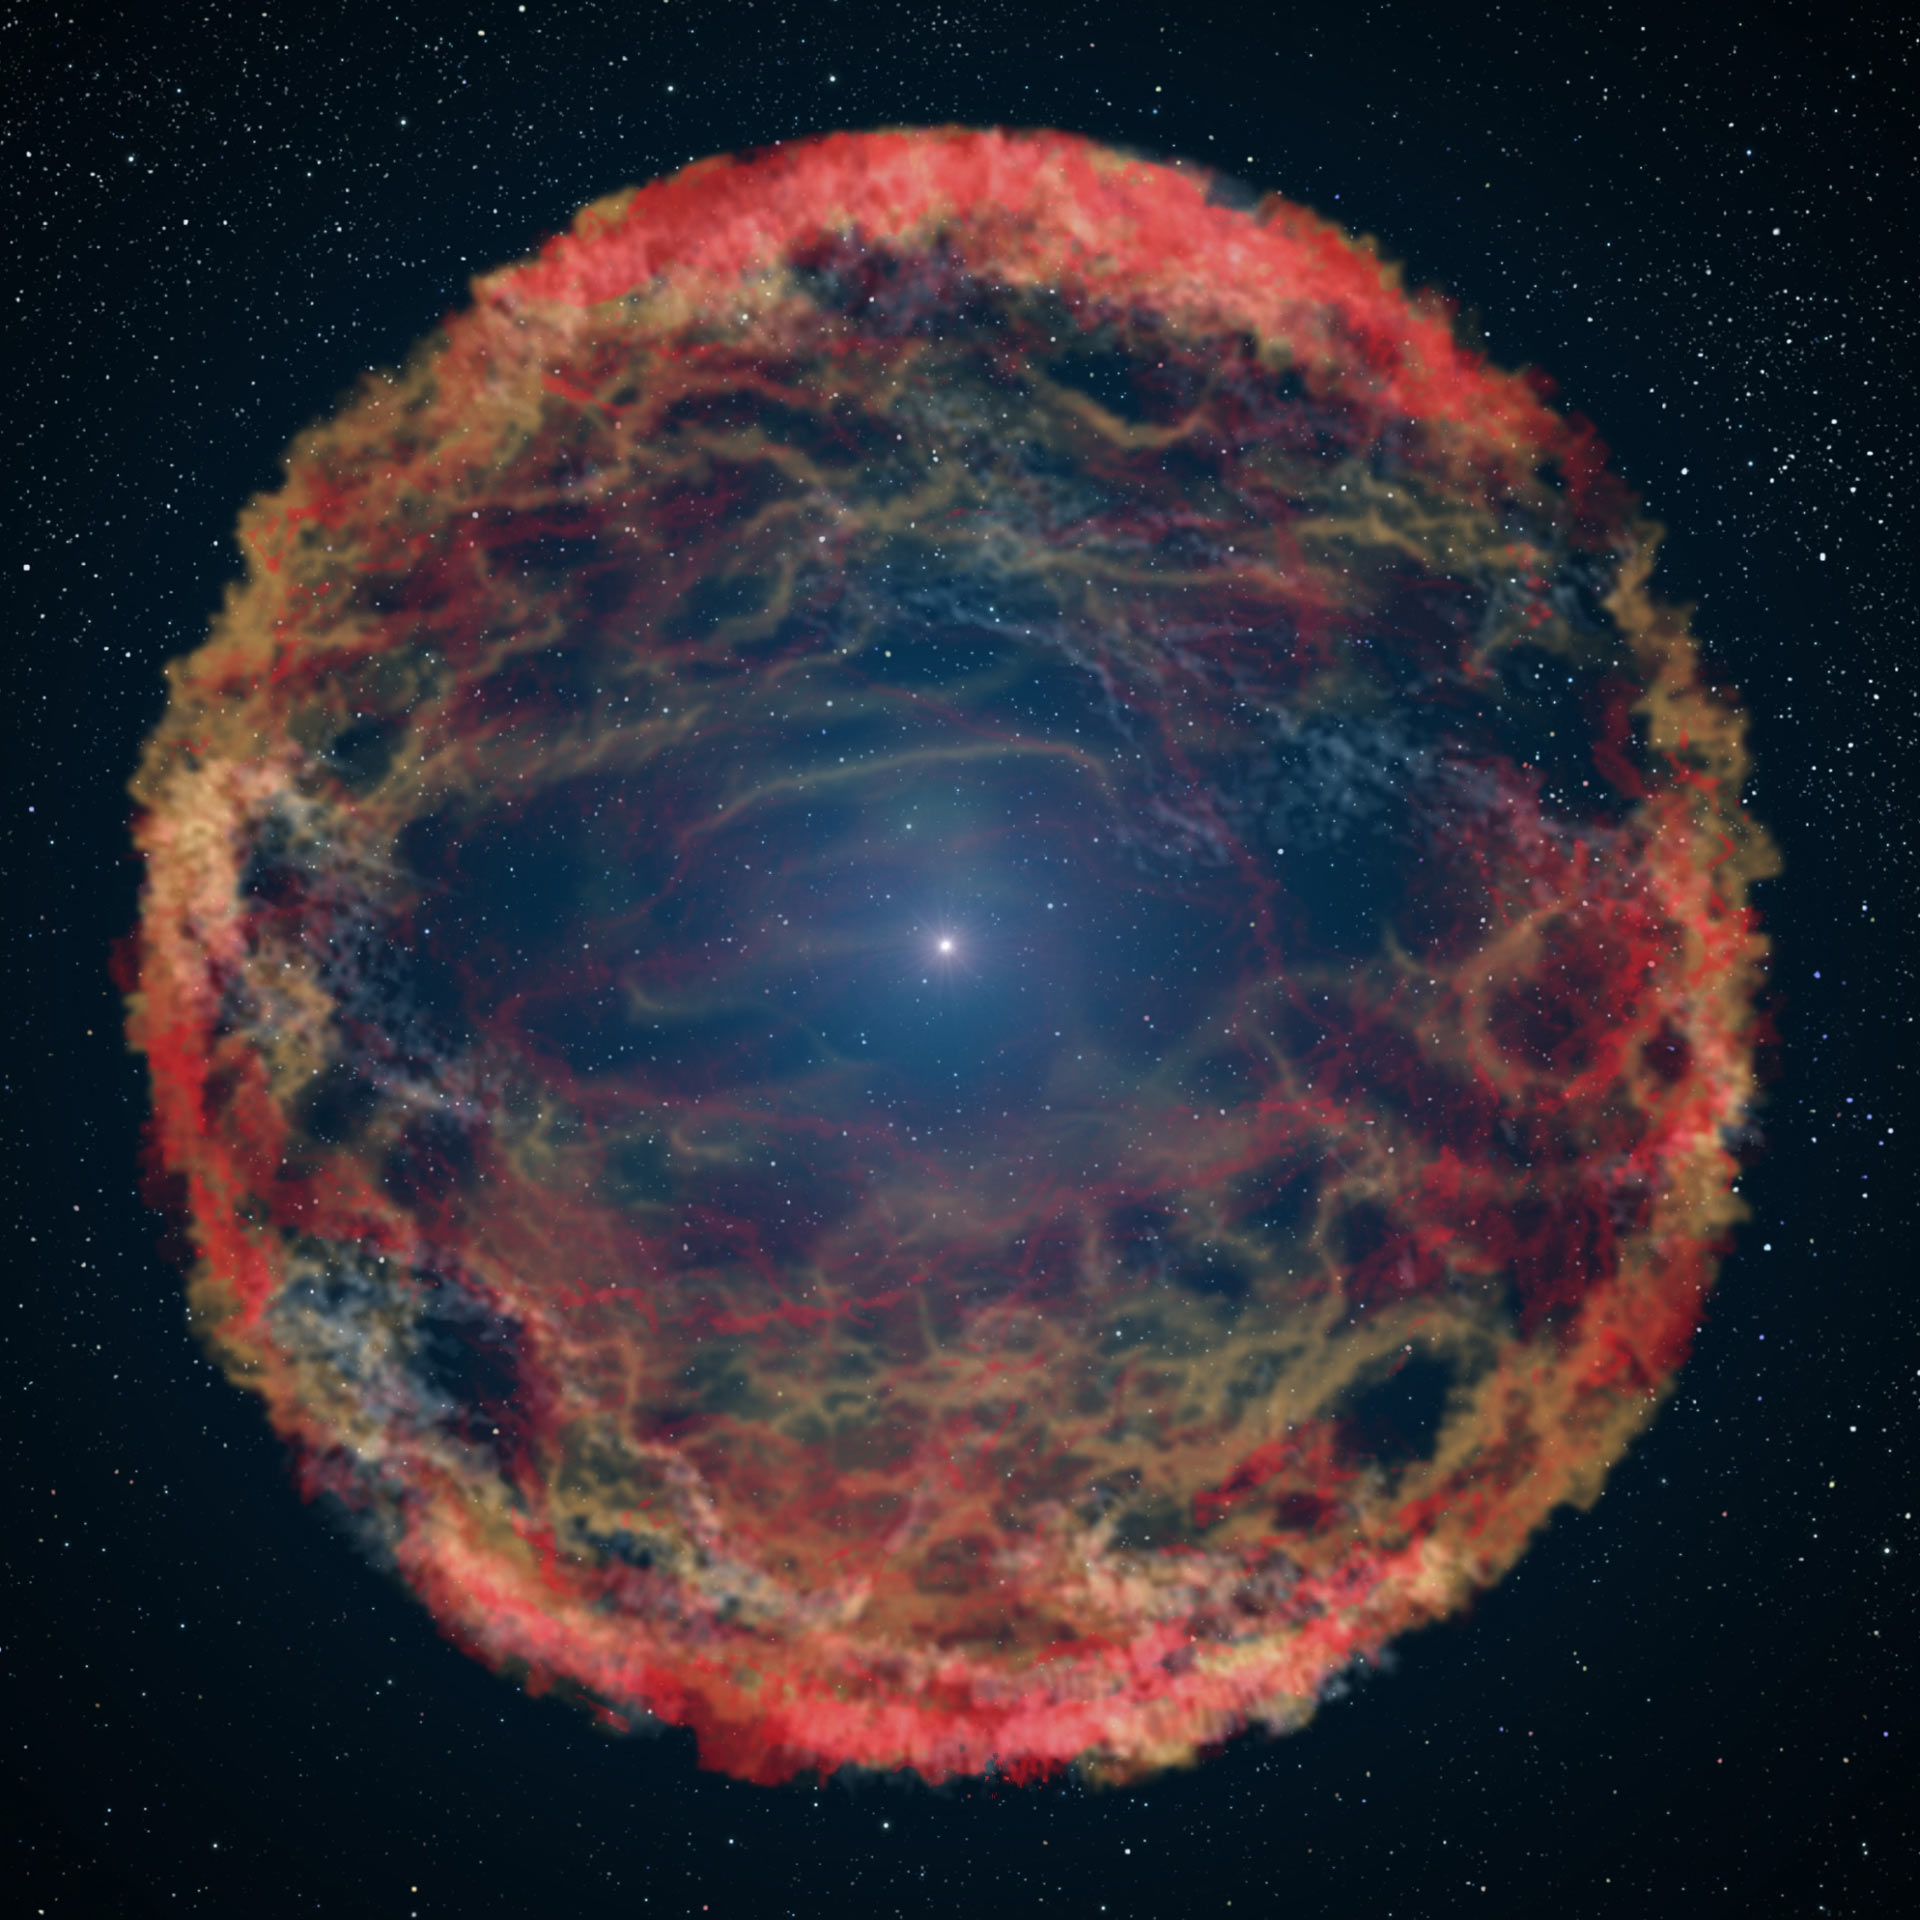 הדמייה של סופרנובה אחרת שהאבל צילם. פיצוץ כוכב הוא תופעה חמקמקה בשל חוסר היכולת לחזותה. אילוסטרציה: NASA, ESA, G. Bacon (STScI)